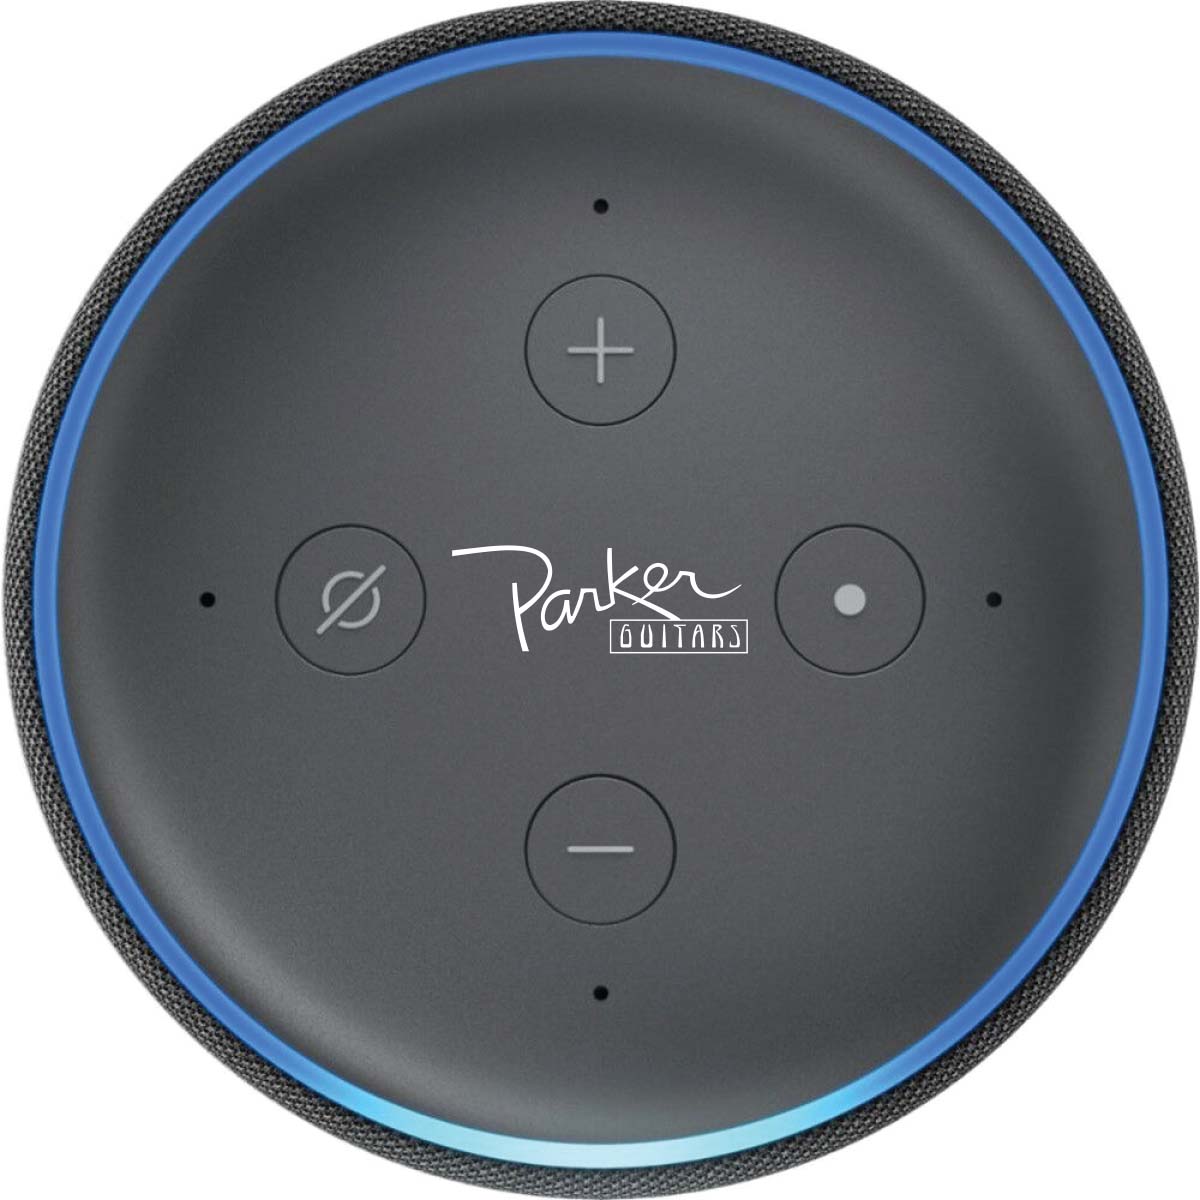 
                  
                    Amazon Echo Dot - Charcoal
                  
                